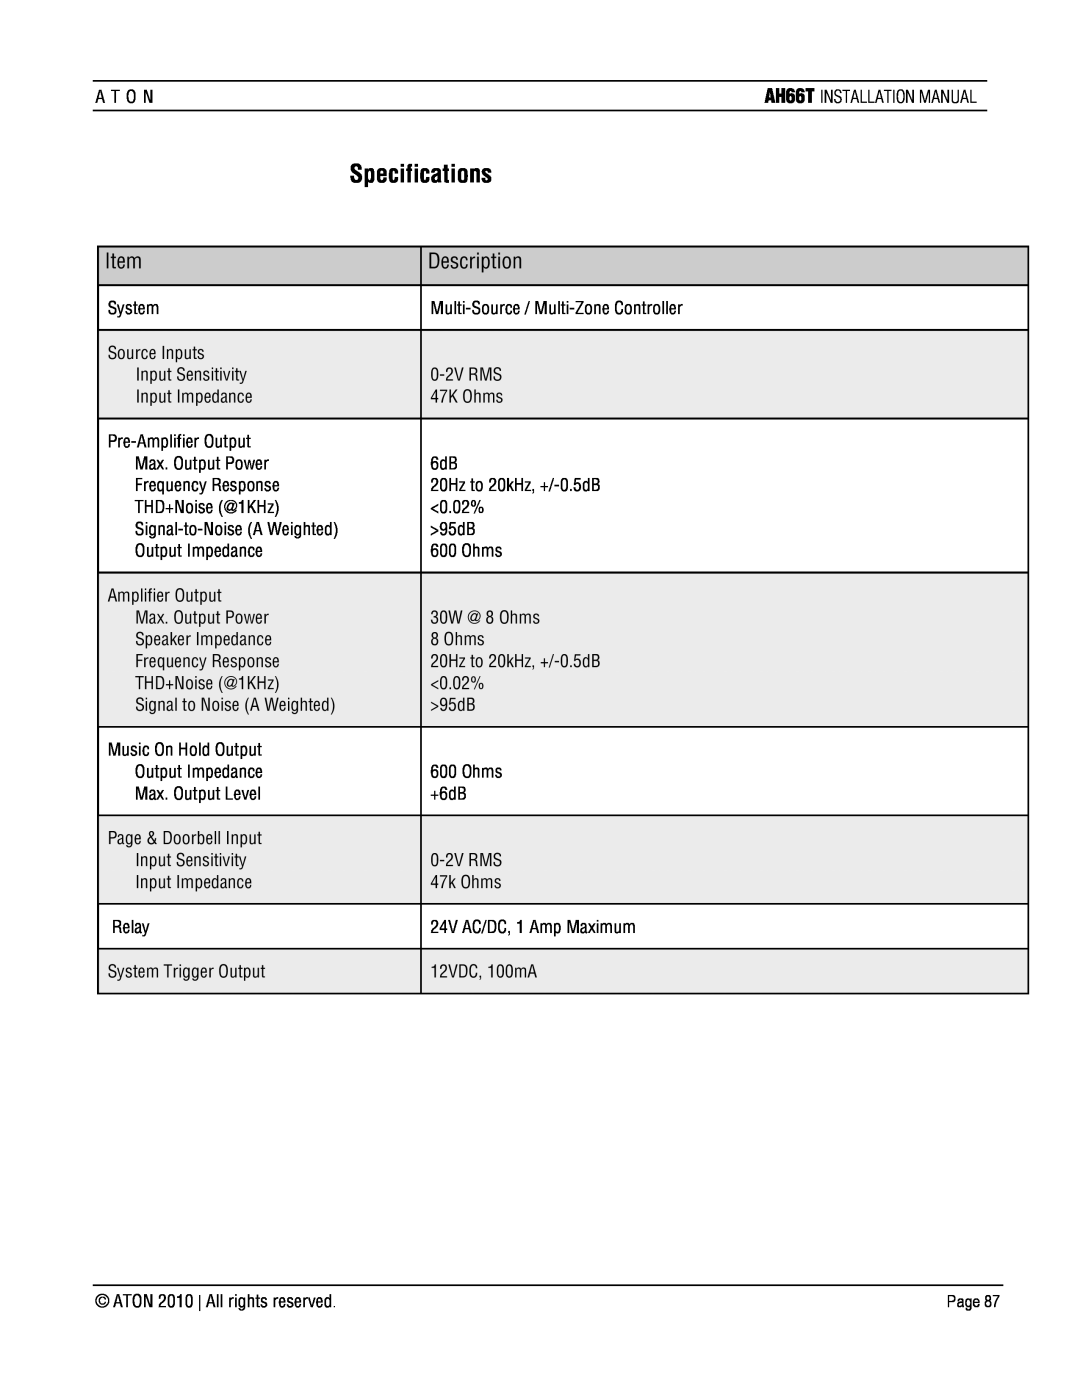 ATON AH66T-KT installation manual Specifications, Item, Description 